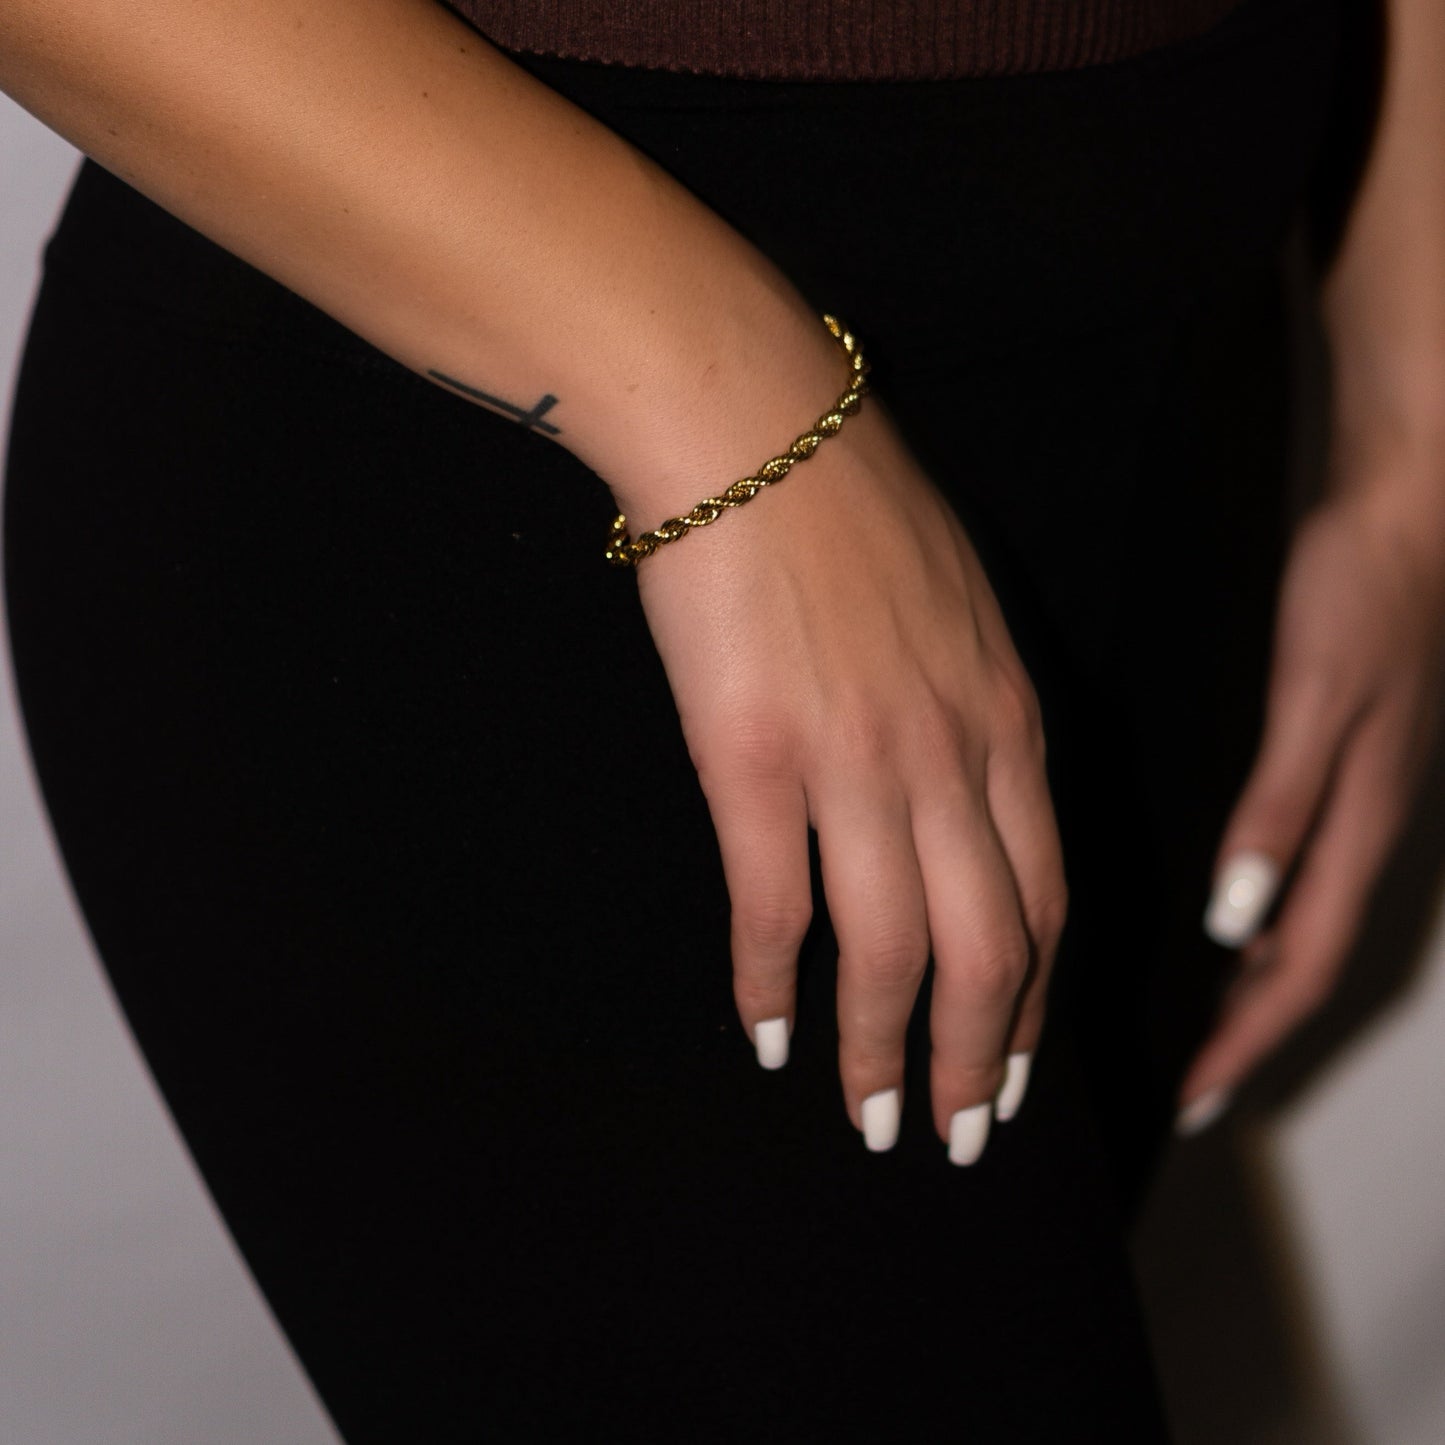 Twist bracelet. Twisted bracelet. Twist 18k gold bracelet. Gold twist bracelet. Simple and cute bracelet. Affordable bracelets. Cute bracelets. Twisted bracelets. Gold jewelry. 